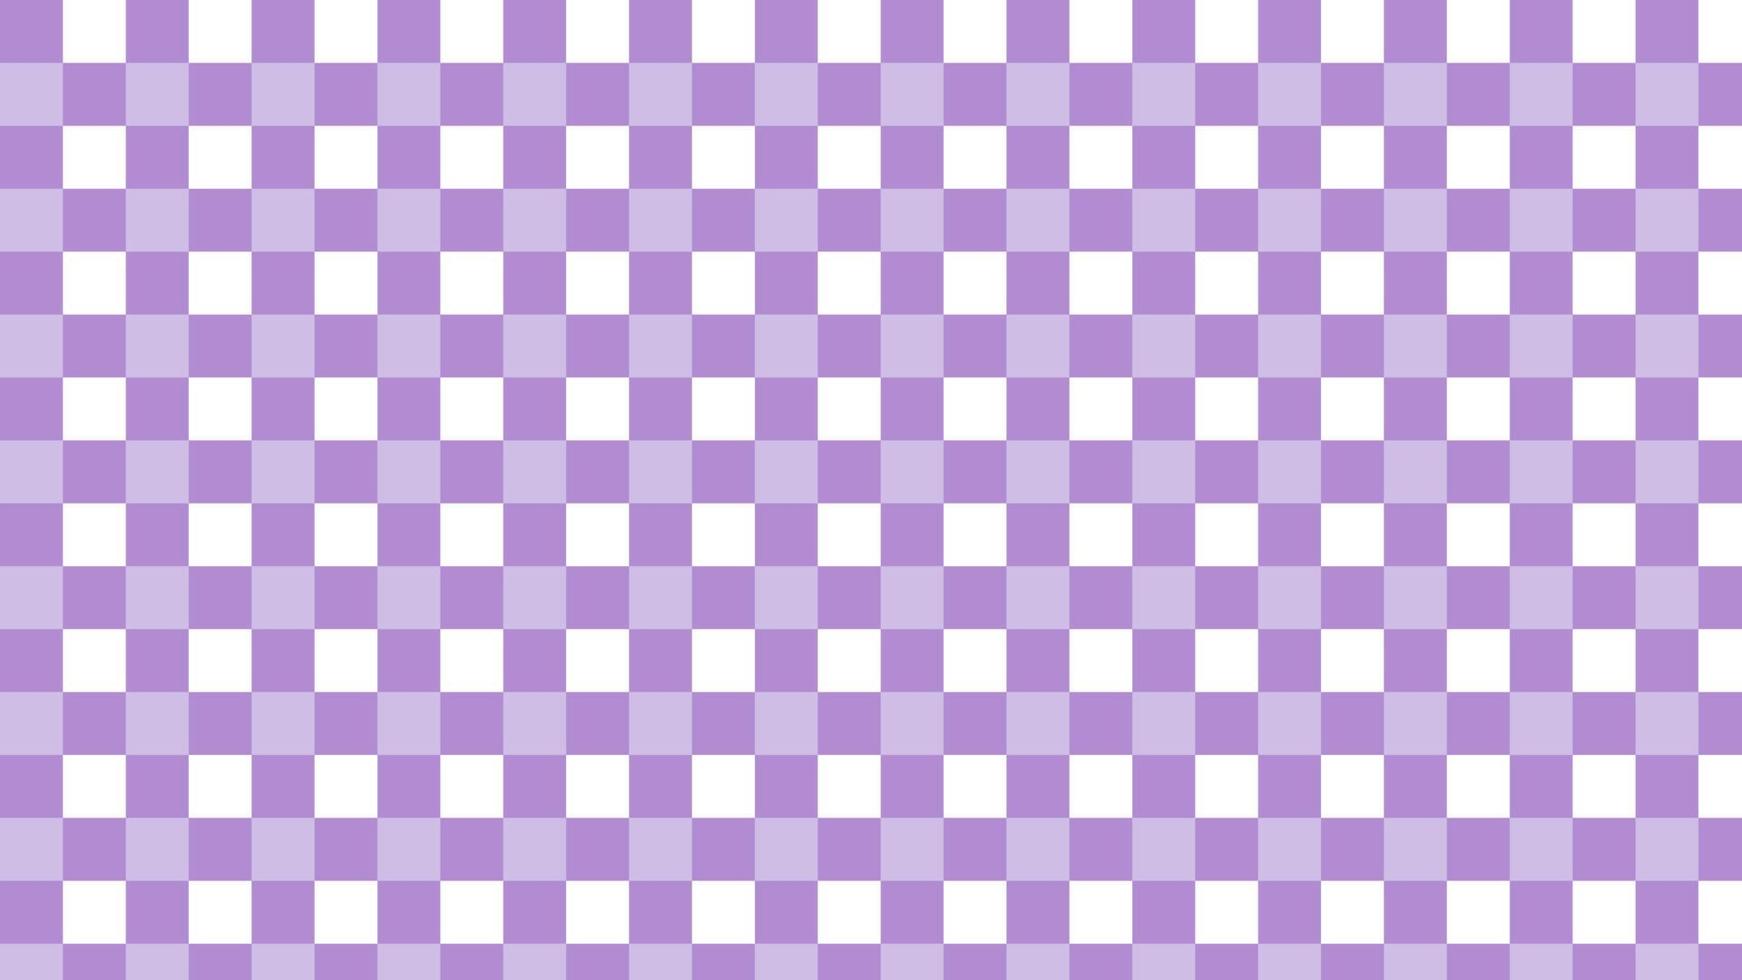 tablero de ajedrez púrpura, guinga, tela escocesa, fondo de patrón de tartán, perfecto para papel tapiz, telón de fondo, postal, fondo vector